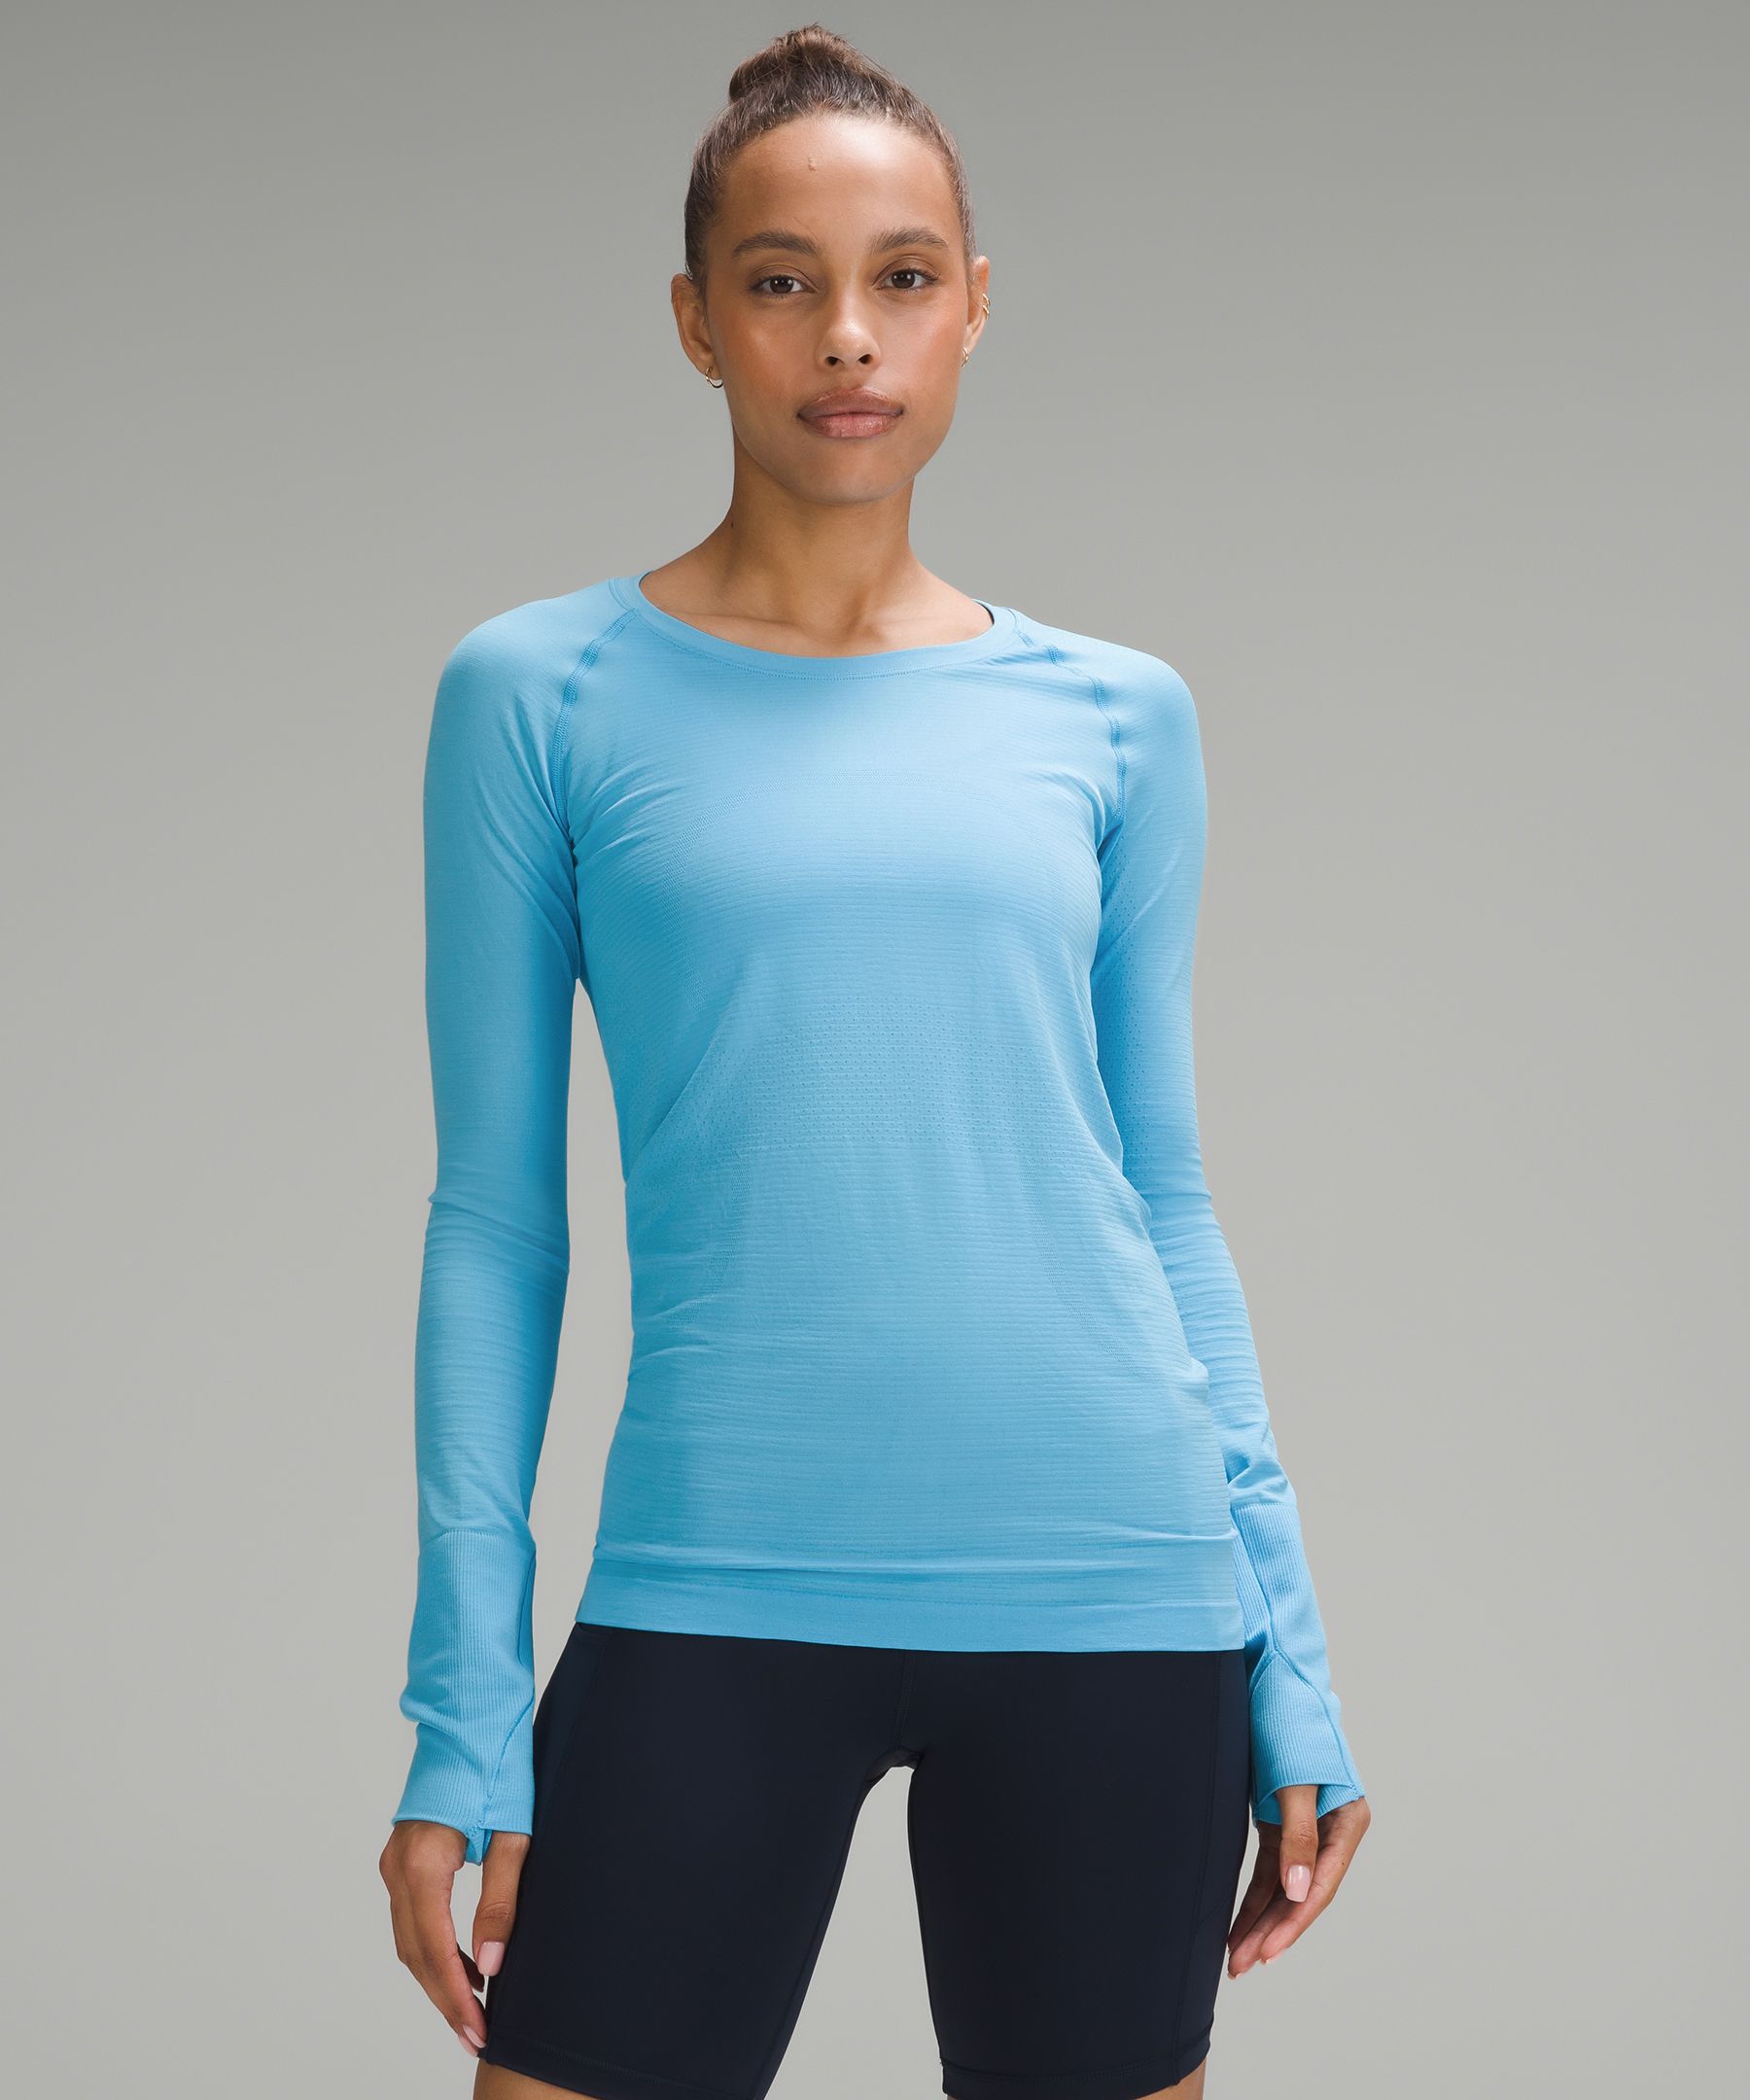 Swiftly Tech Long-Sleeve Shirt 2.0 *Hip Length | Women's Long 